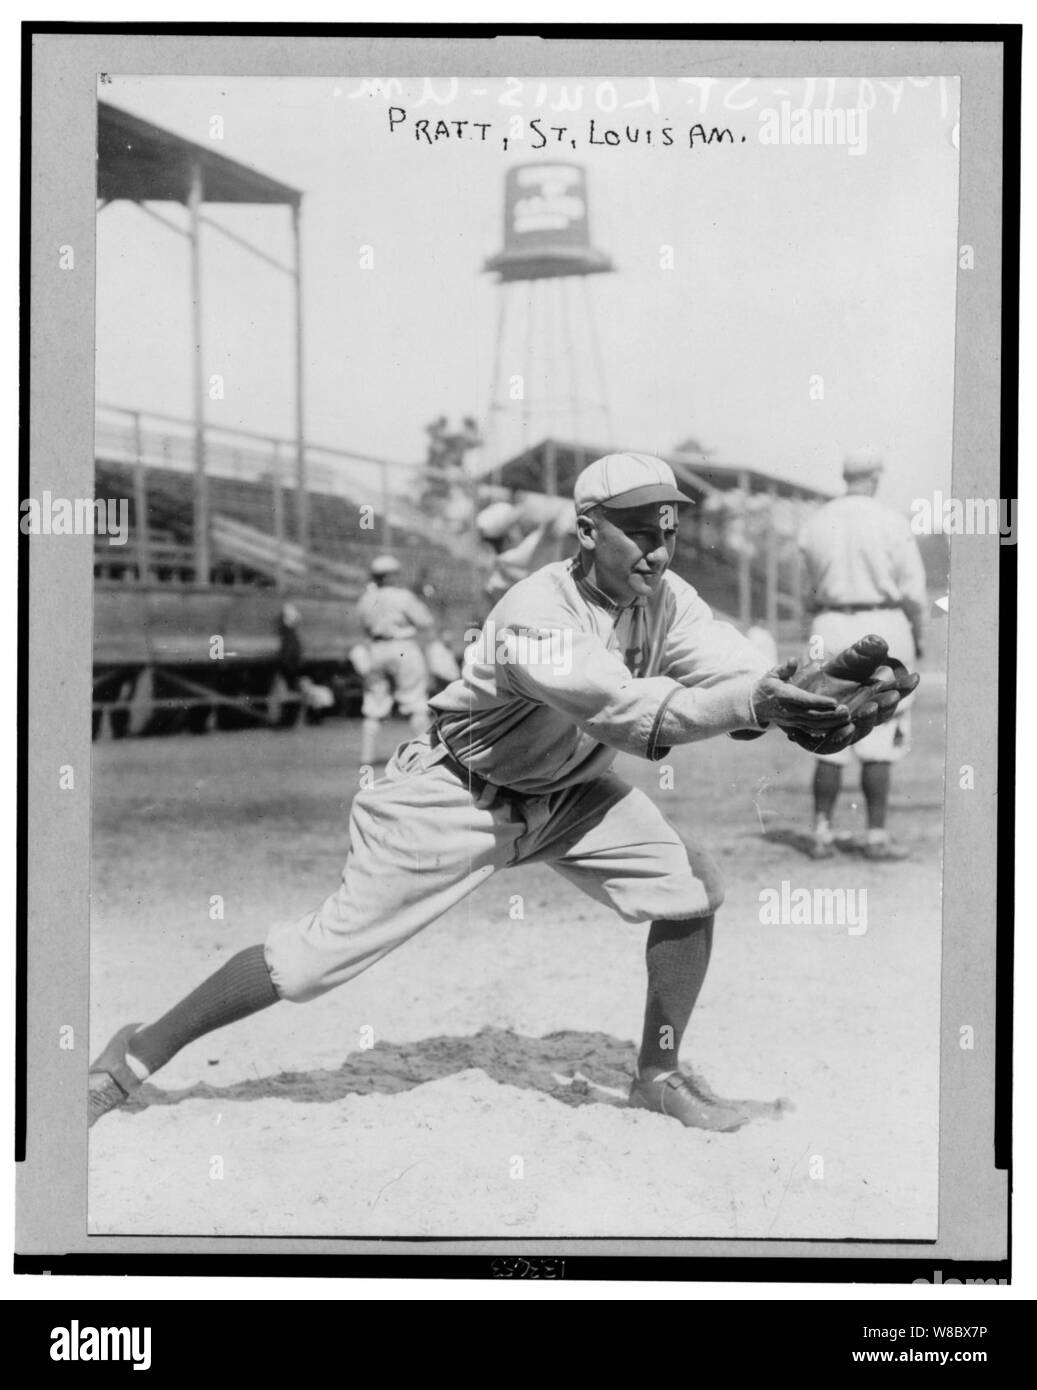 Derrill Burnham 'DEL' Pratt, Saint Louis Browns joueur de baseball, en uniforme, debout en position de recevoir jeté baseball Banque D'Images